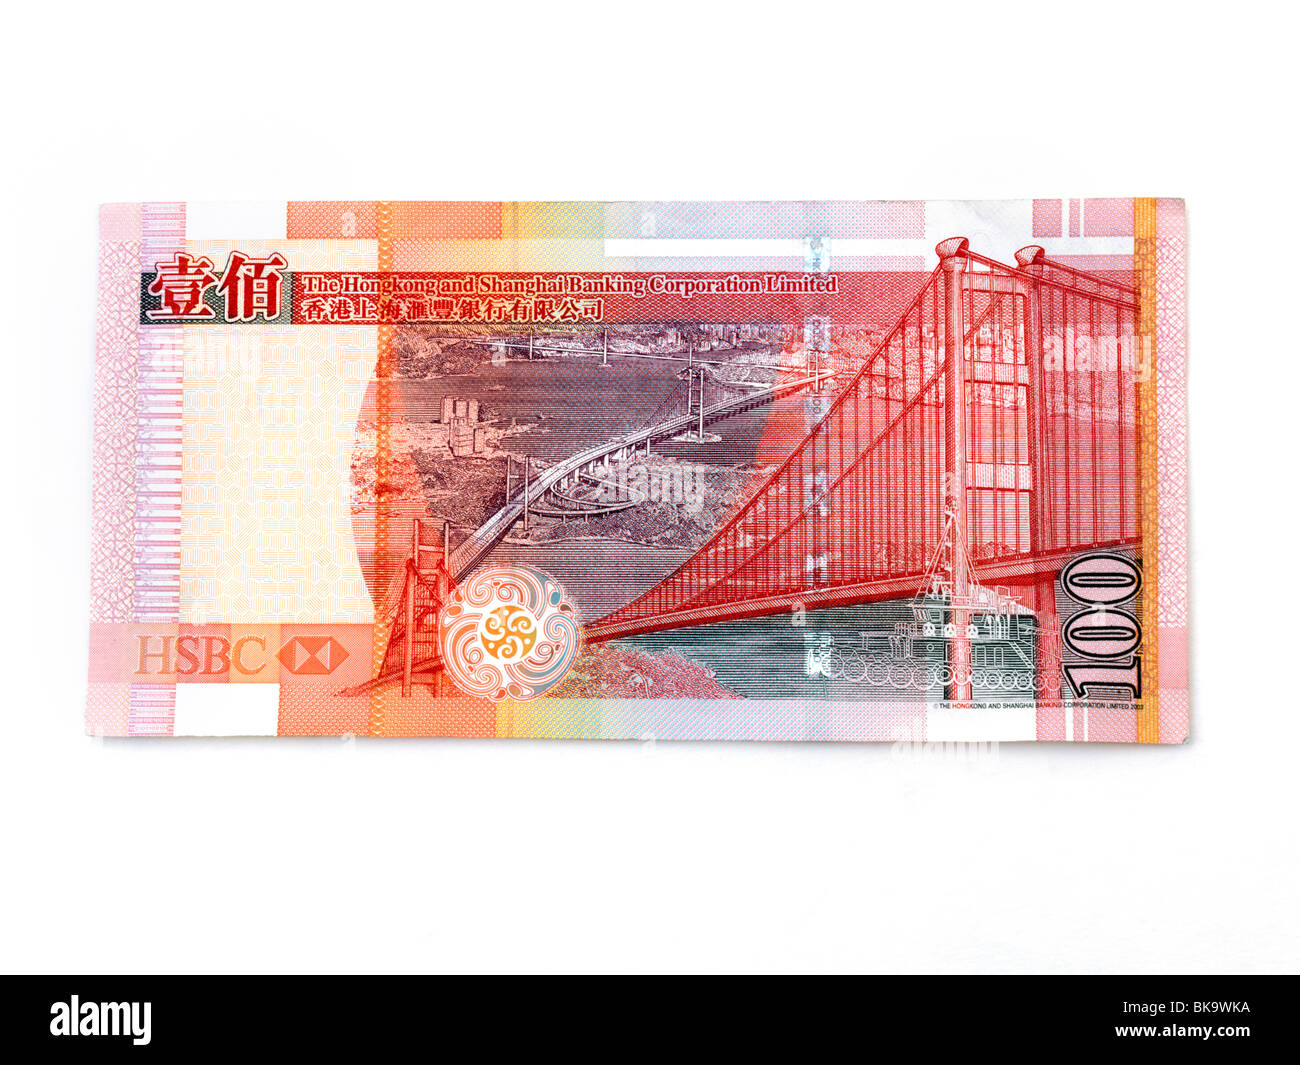 Hong Kong 100 Dollars Banknote Issued By Hong Kong Shanghai Banking Corporation (HSBC) Stock Photo